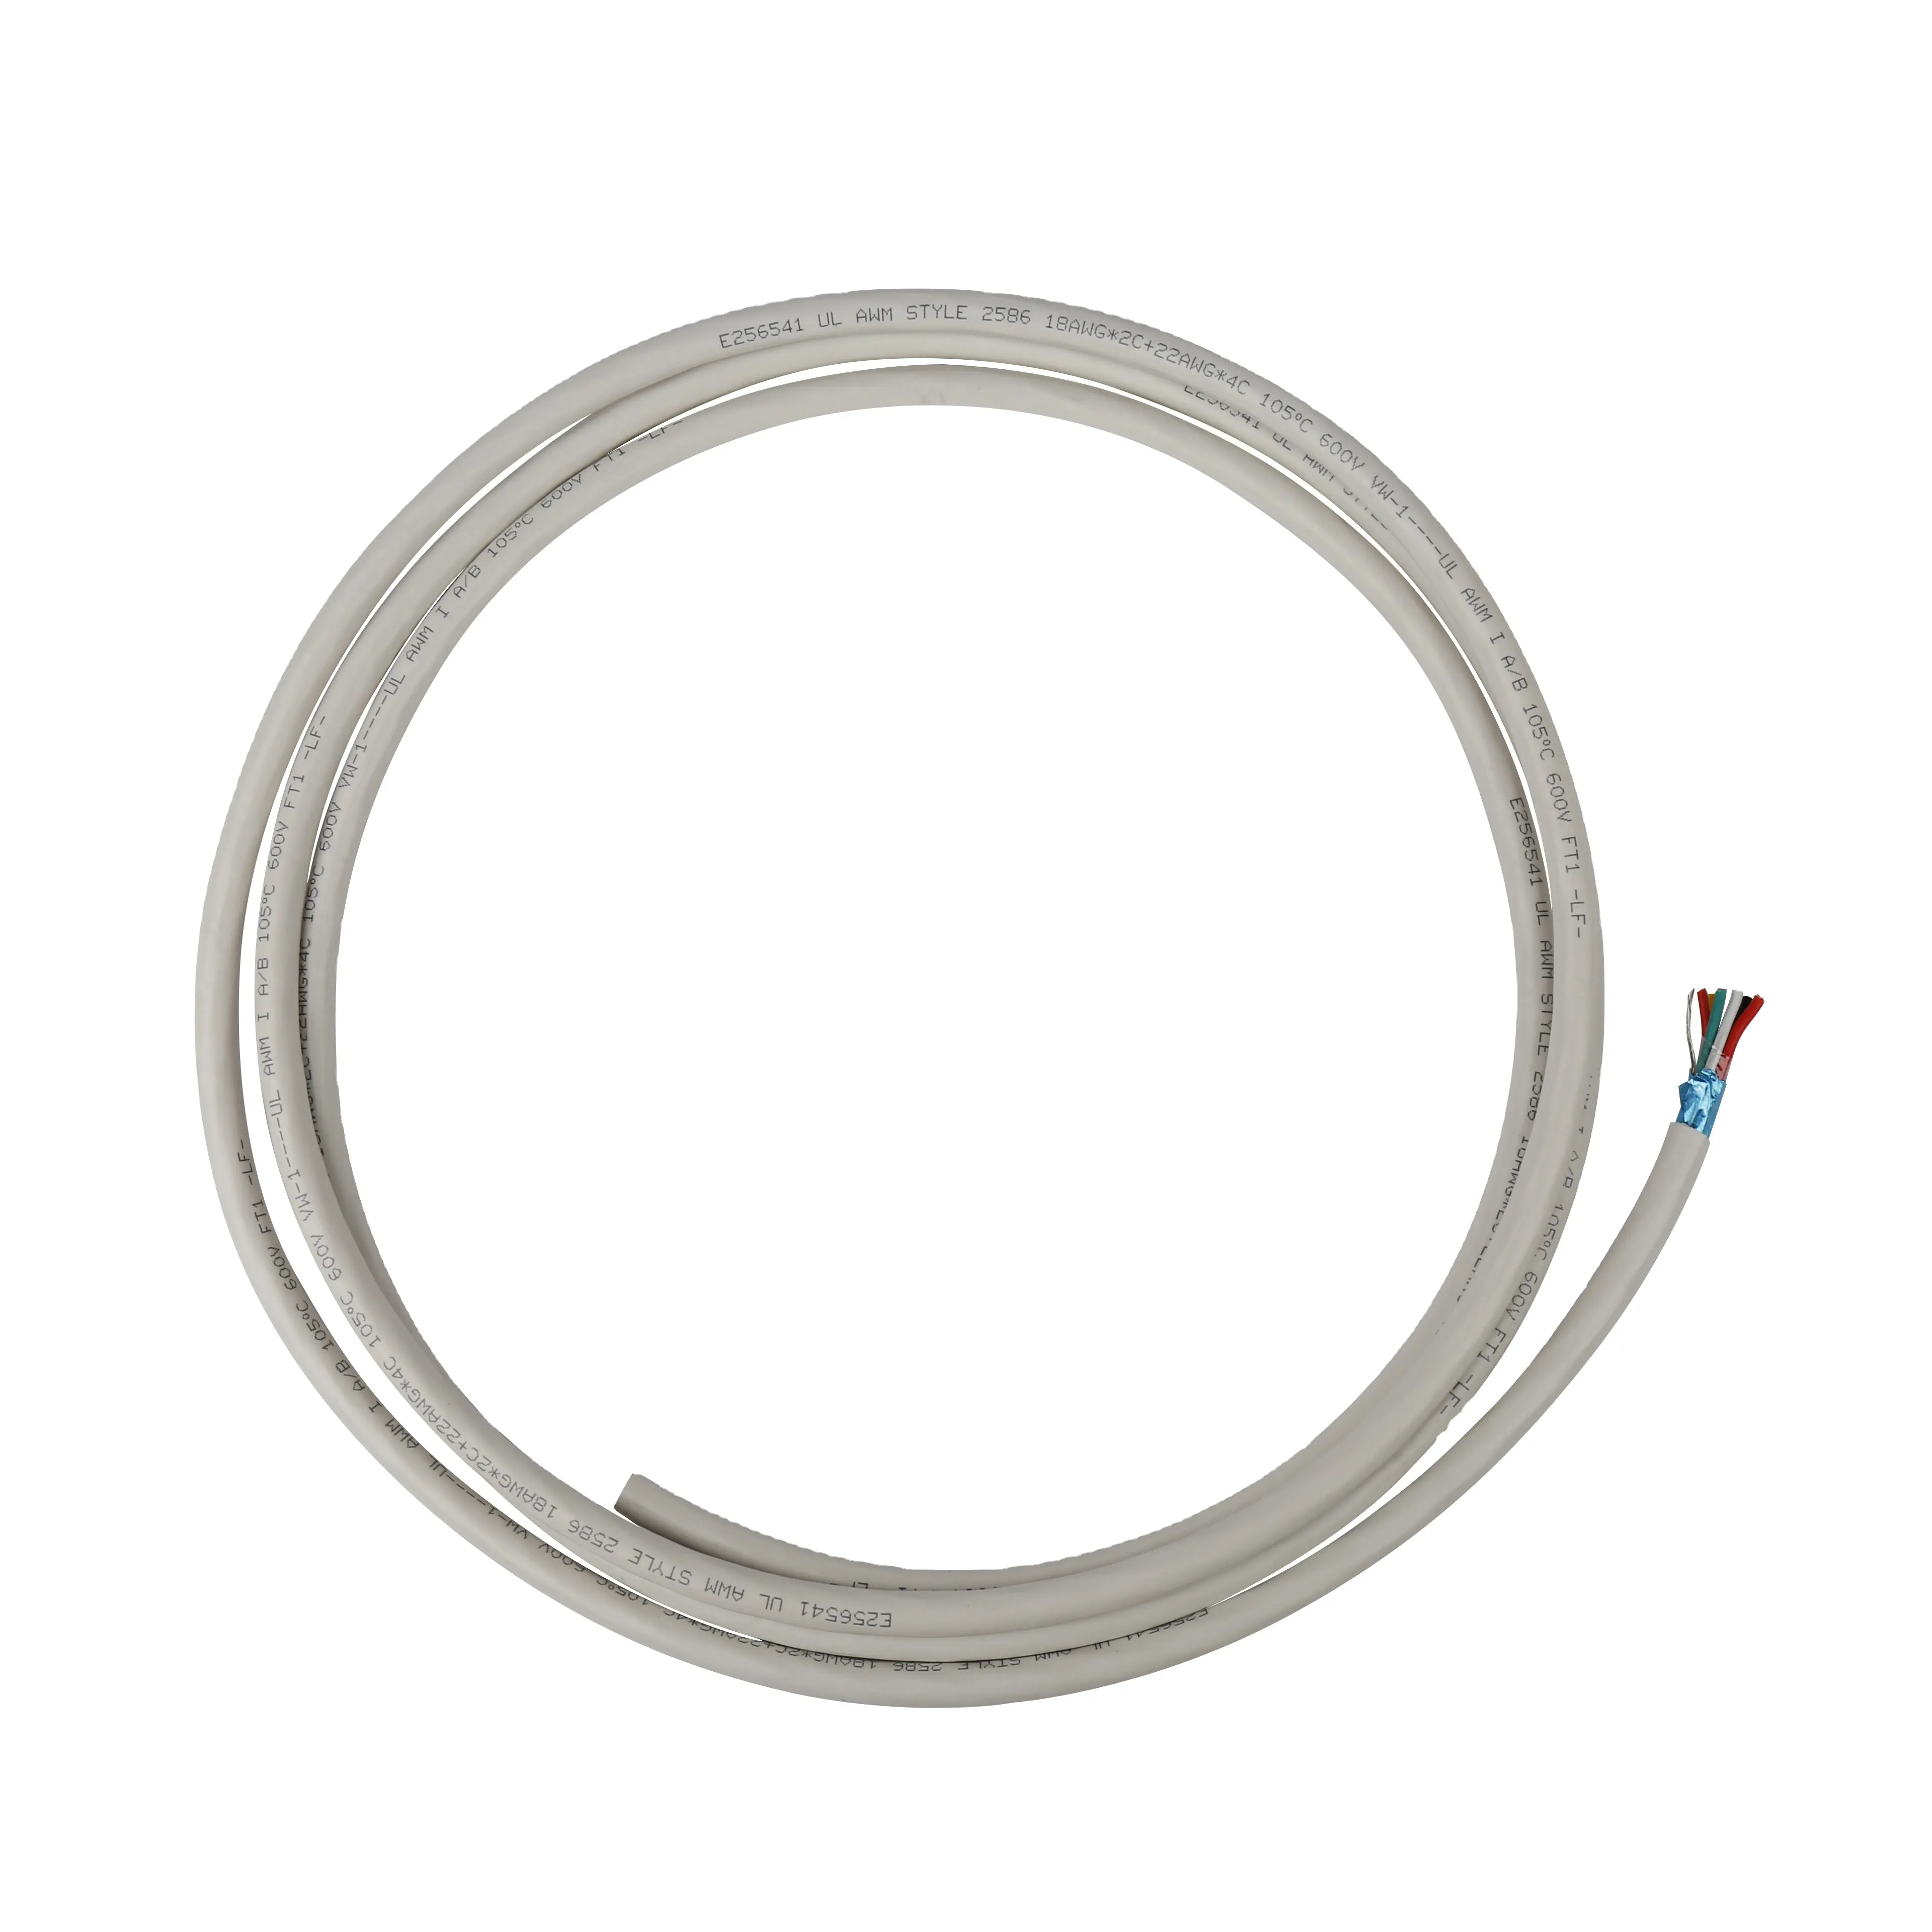 18 AWG verzinntes Kupfer PVC Kabel Draht UL1015 für elektrische Geräte